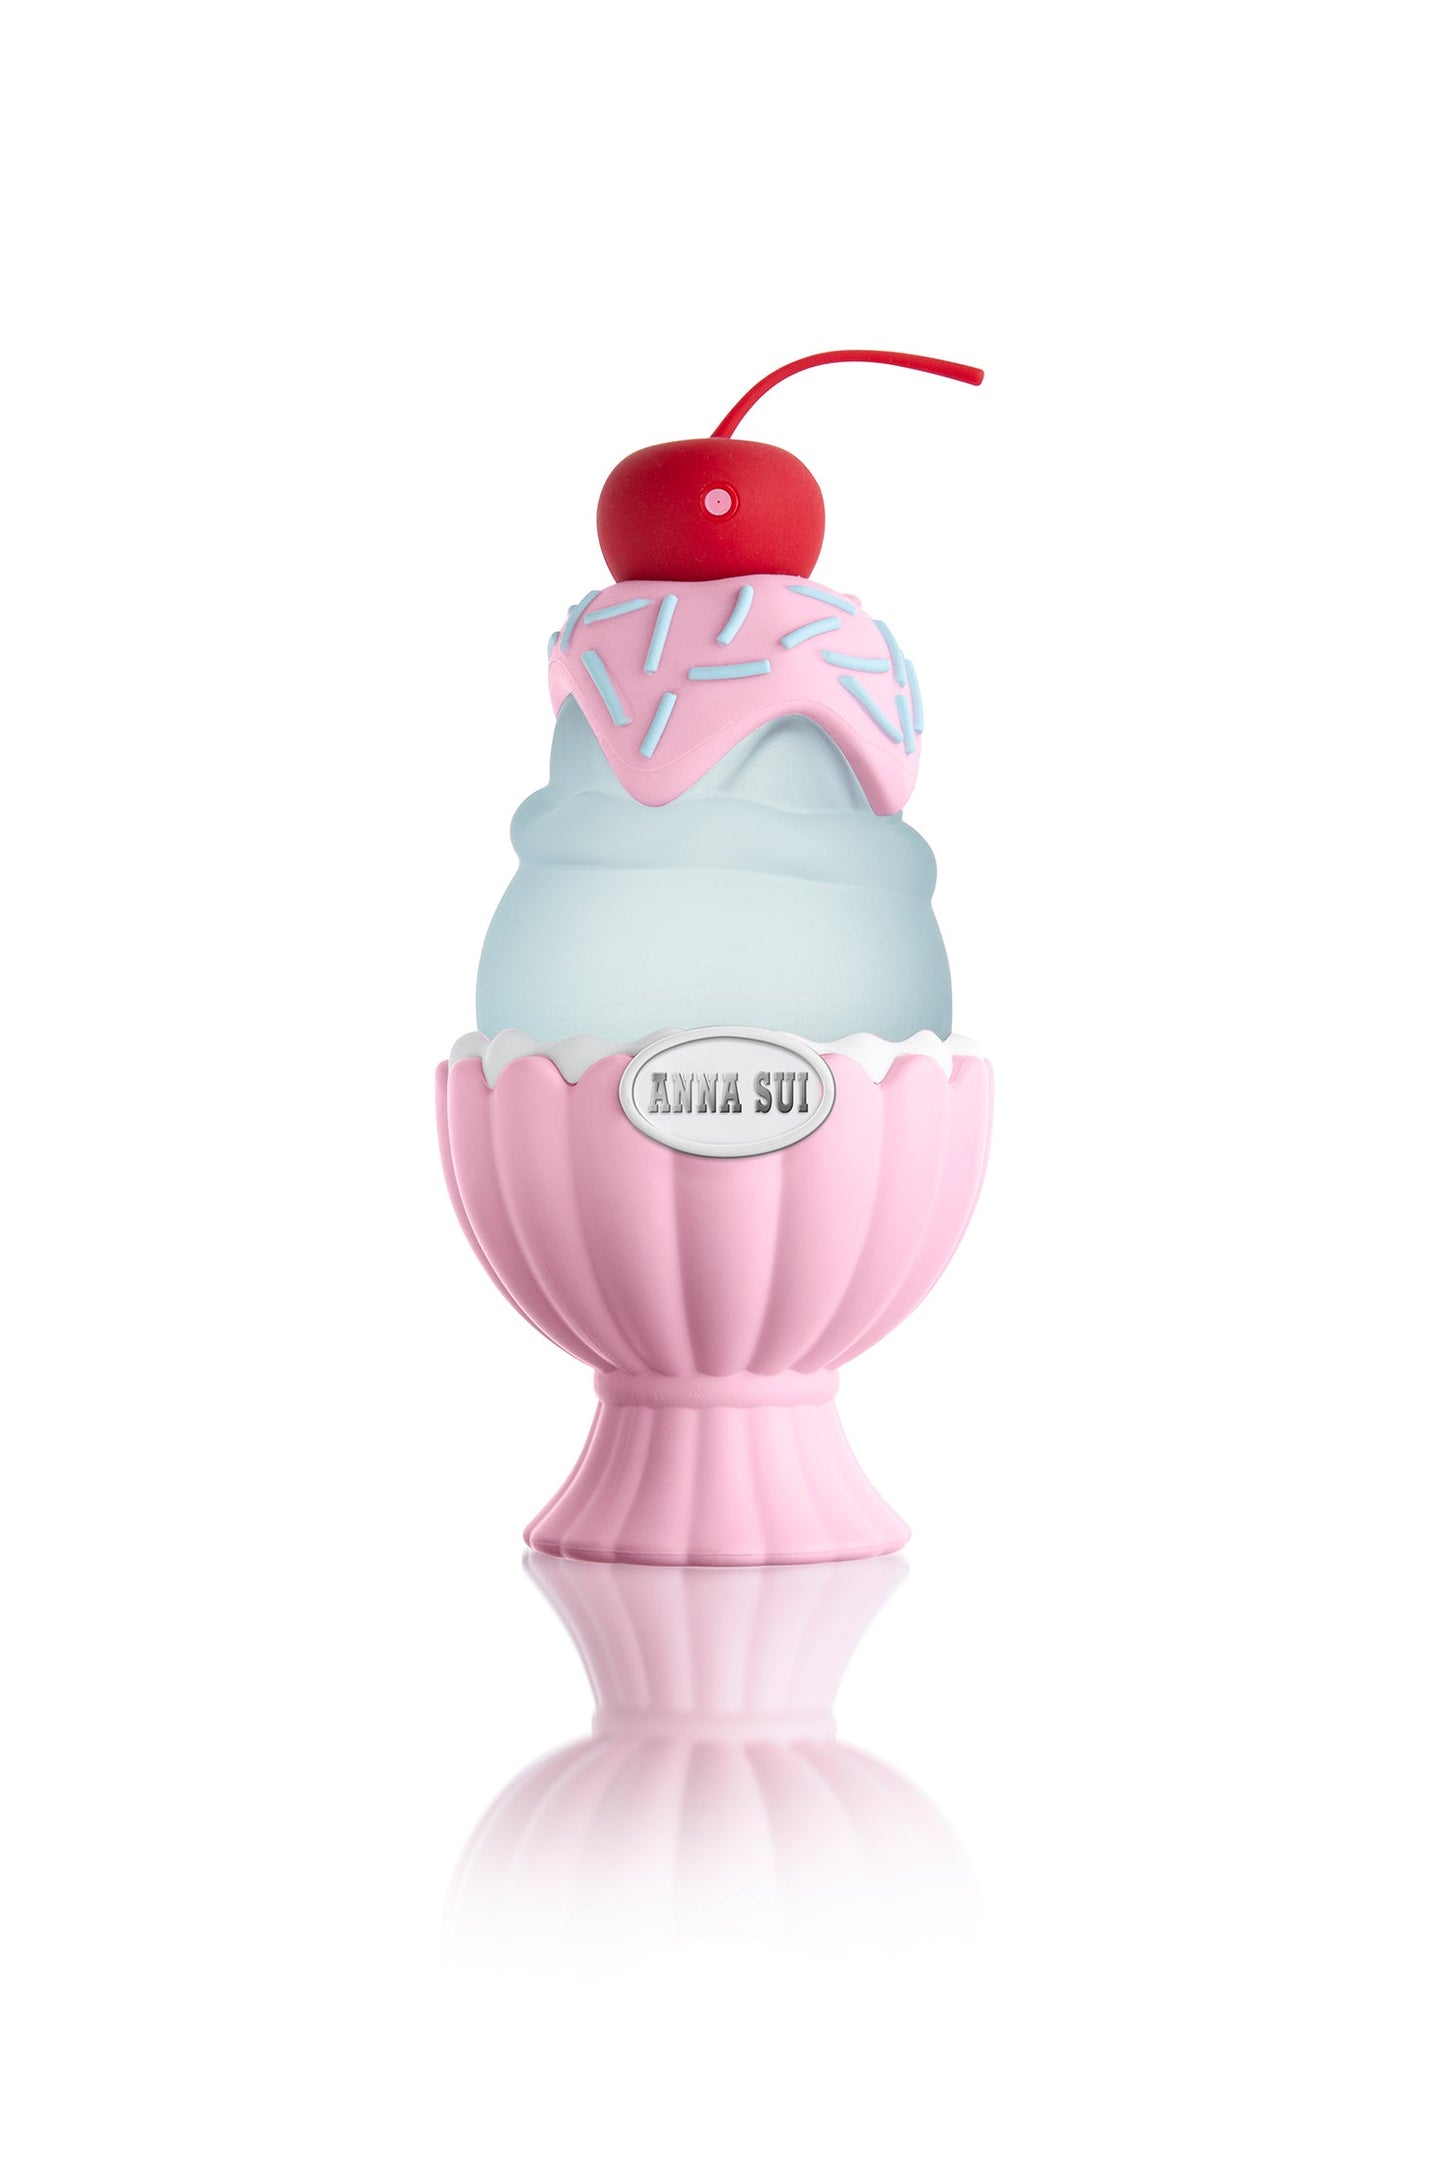 它裝在一個聖代粉紅色瓶子里，底部有一個貝殼，藍色霜淇淋在上面有一個櫻桃